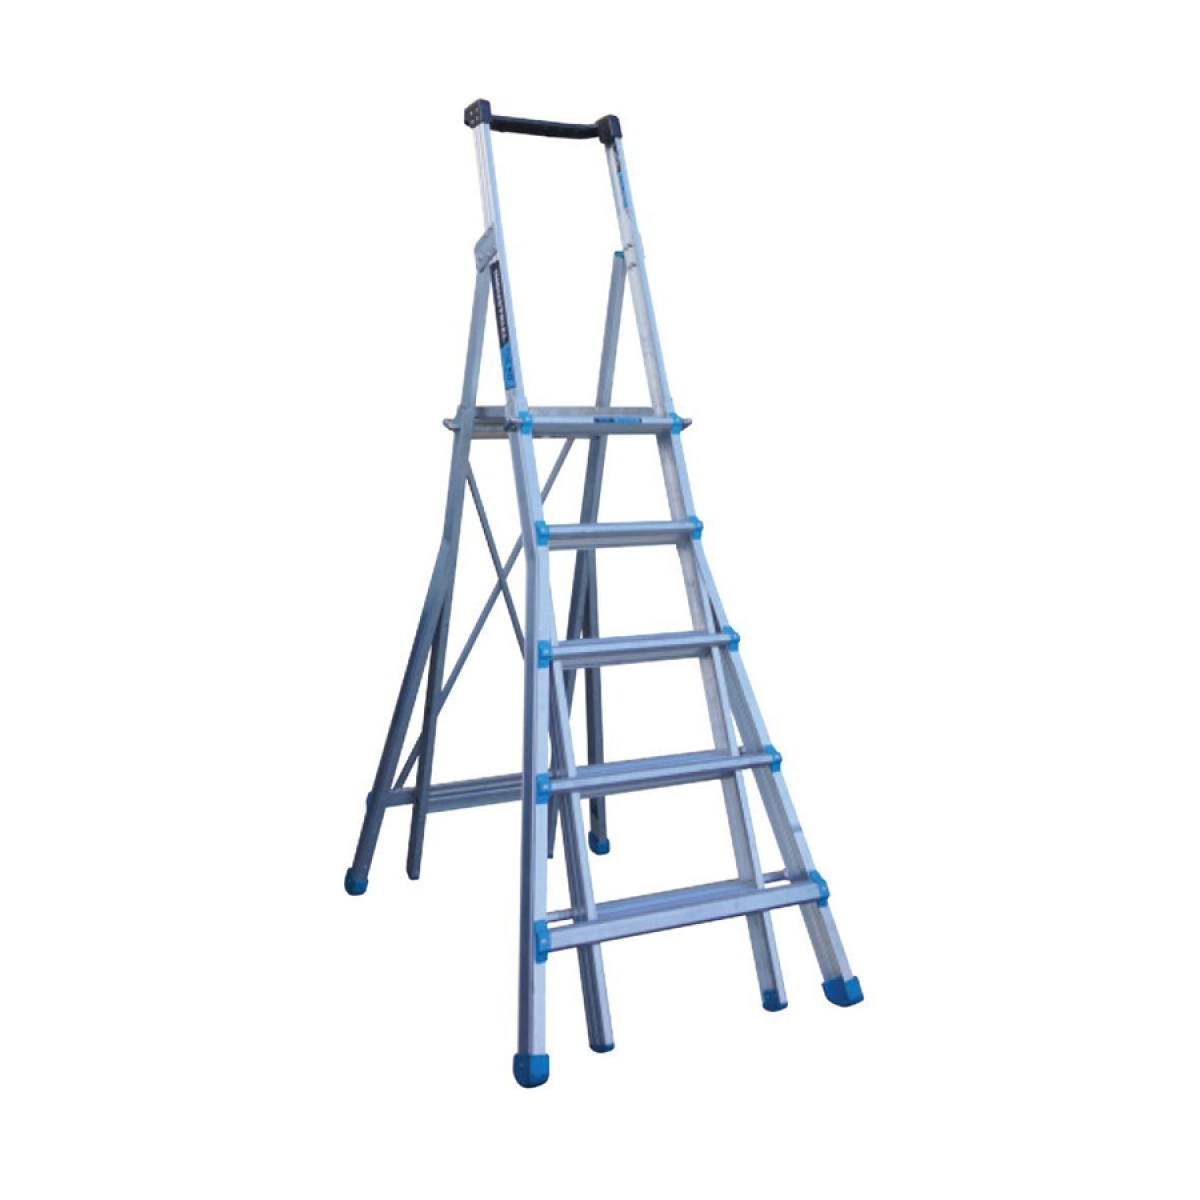 Easy Access Adjustable Platform Ladder 5-9 Step